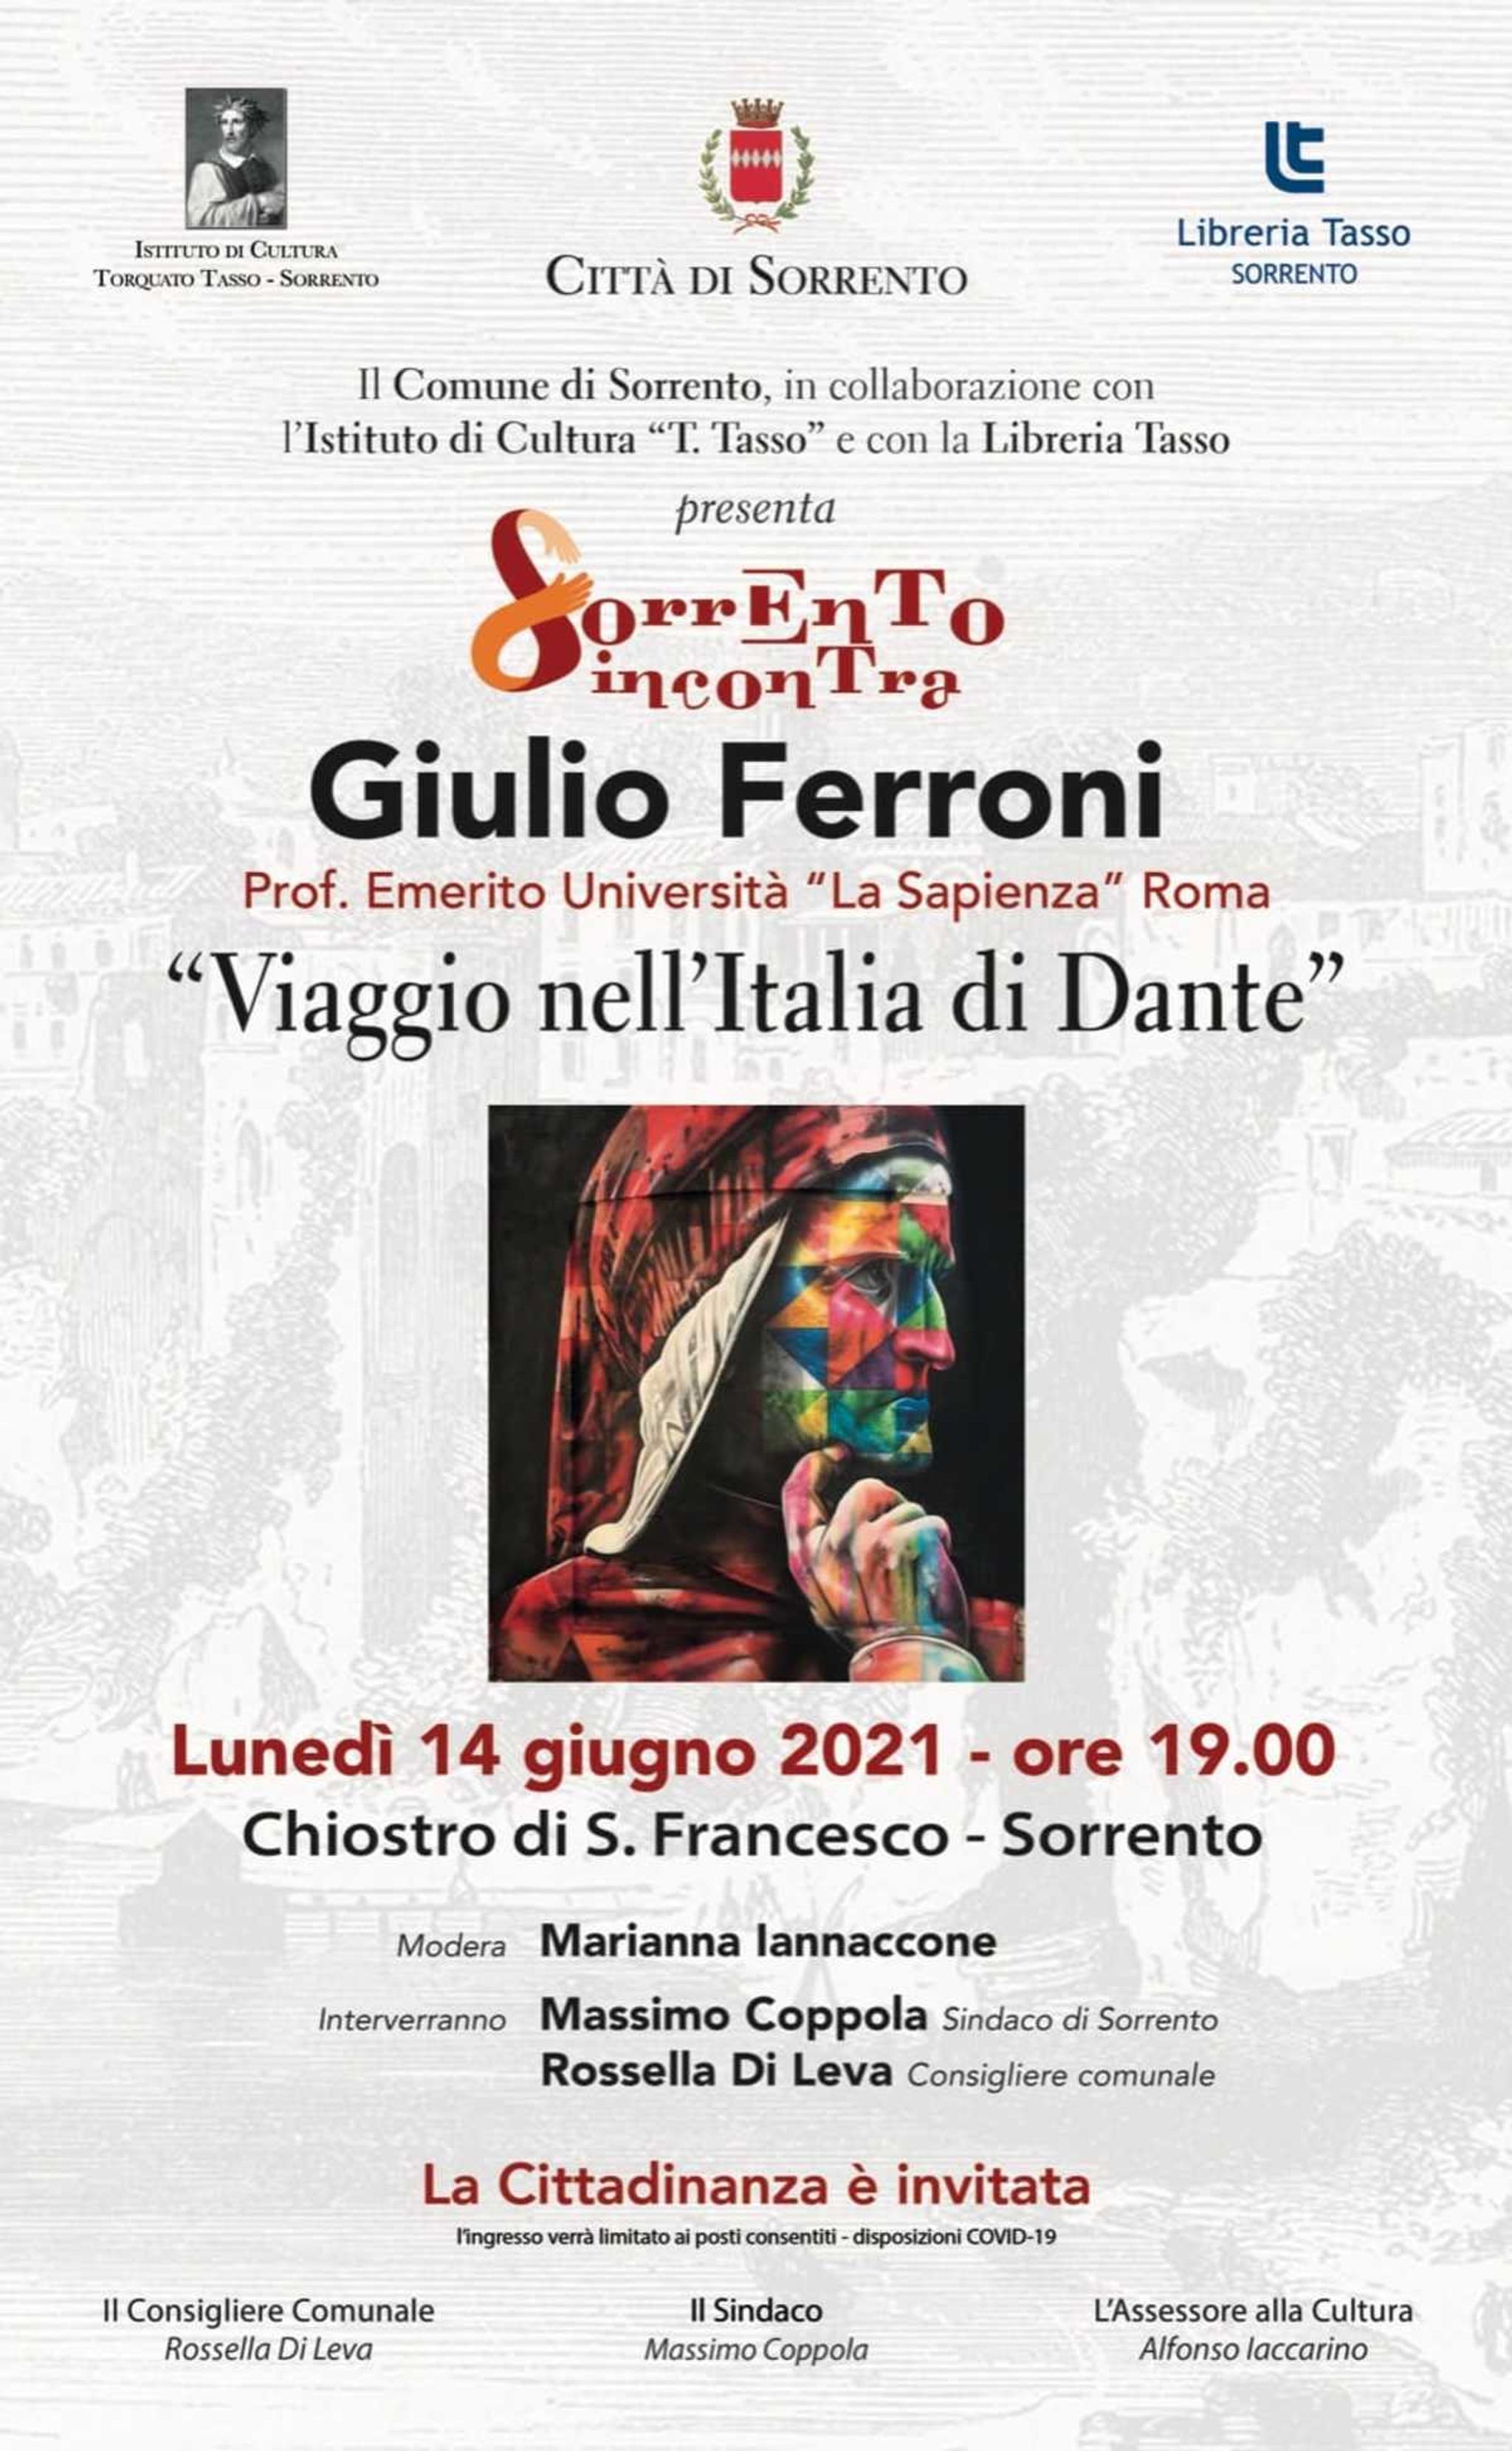 Giulio Ferroni: "Viaggio nell'Italia di Dante"